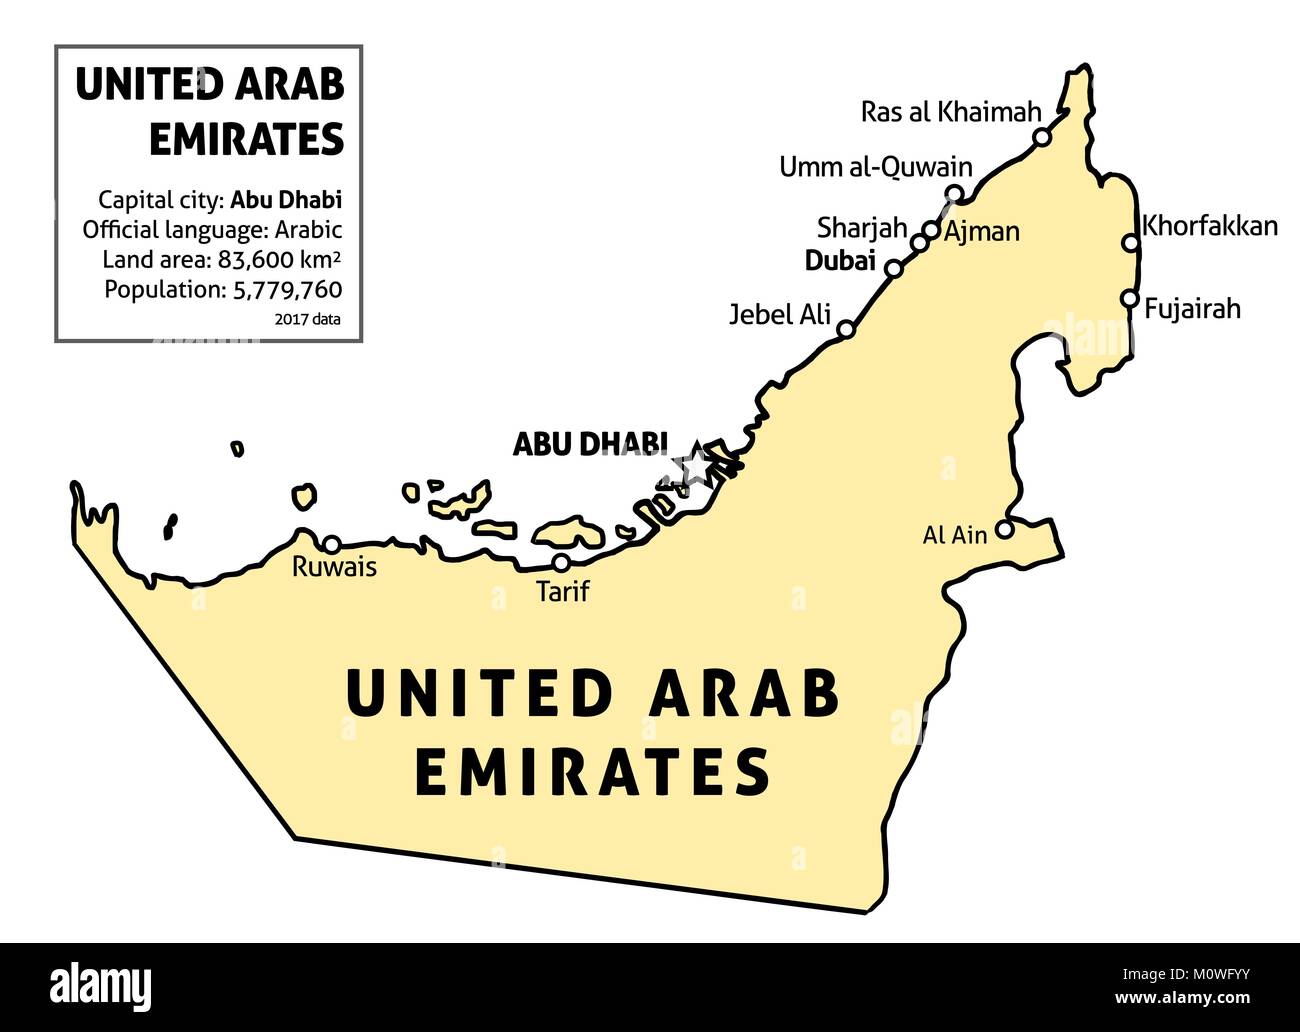 Vereinigte Arabische Emirate (VAE) Karte. Umrisse vektor Land Karte mit den wichtigsten Städten und Datentabelle. Stock Vektor